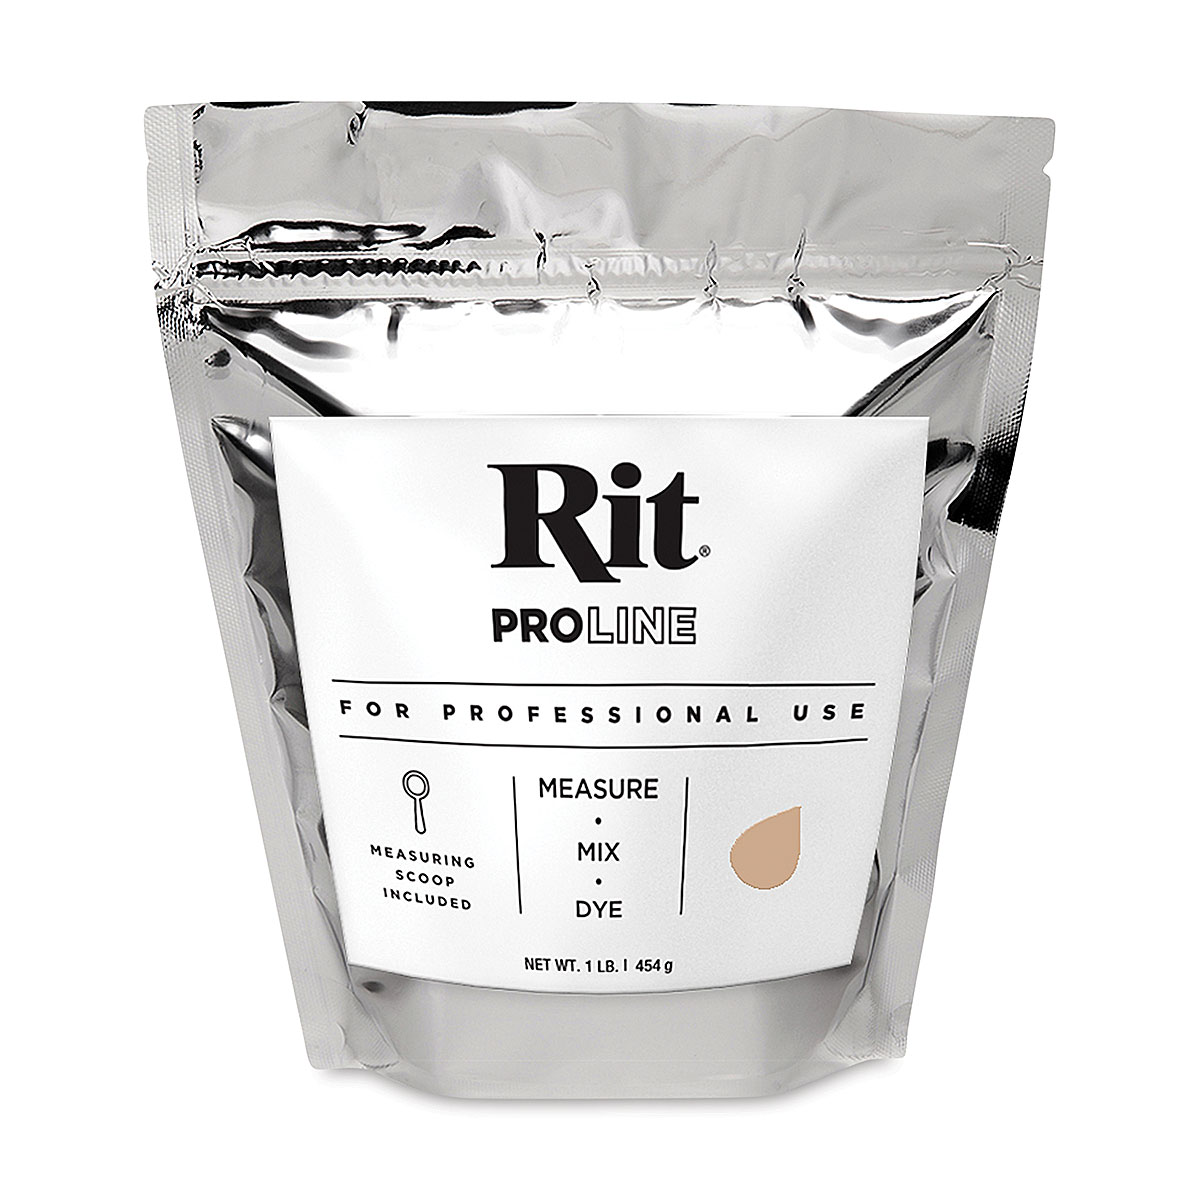 Rit ProLine Powder Dye - Tan, 1 lb